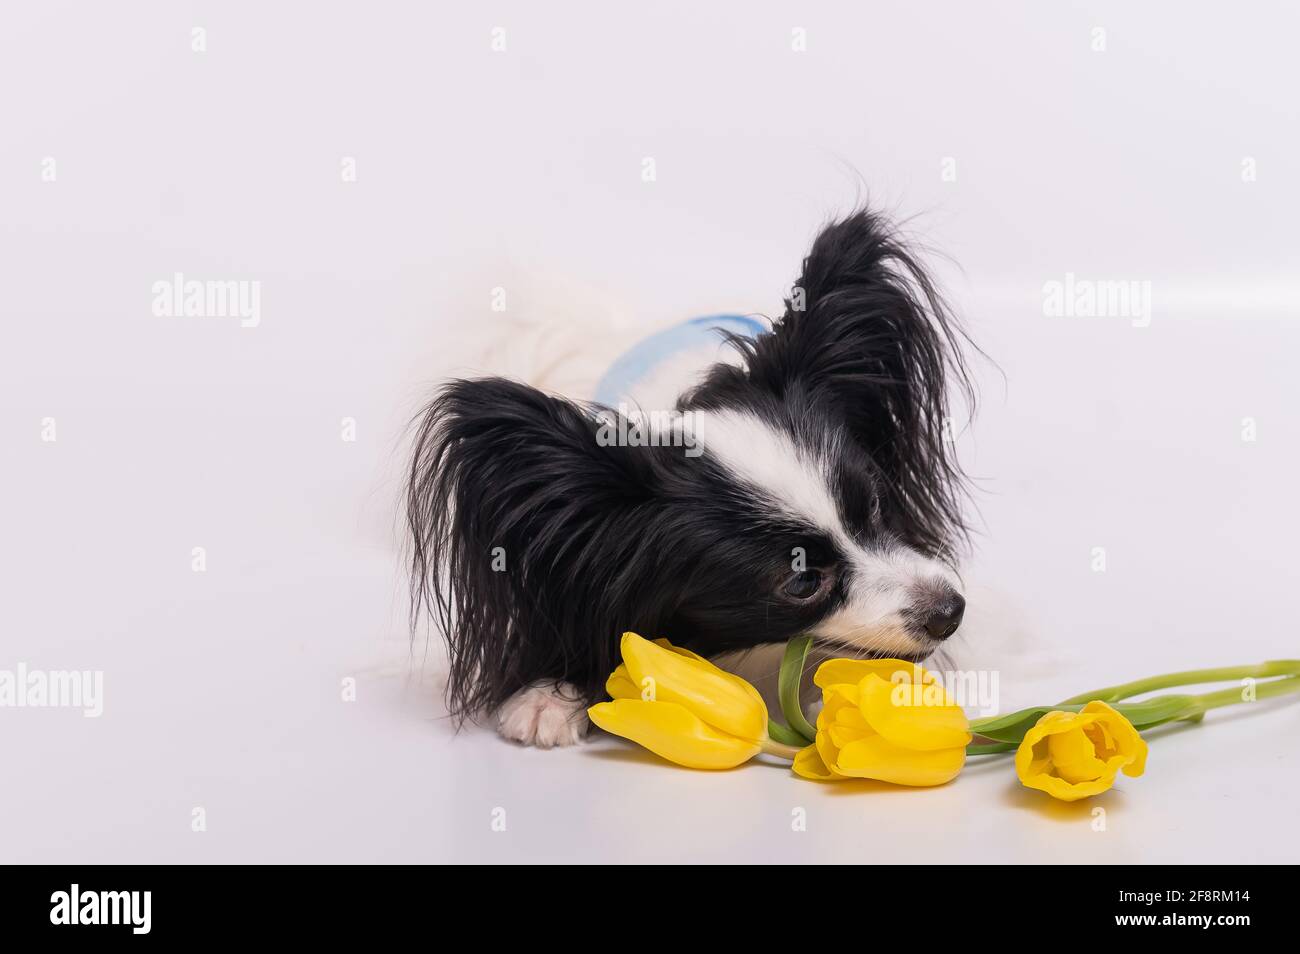 Lustiger Hund mit großen, zotteligen schwarzen Ohren und einem Strauß Von  gelben Tulpen auf weißem Hintergrund Stockfotografie - Alamy